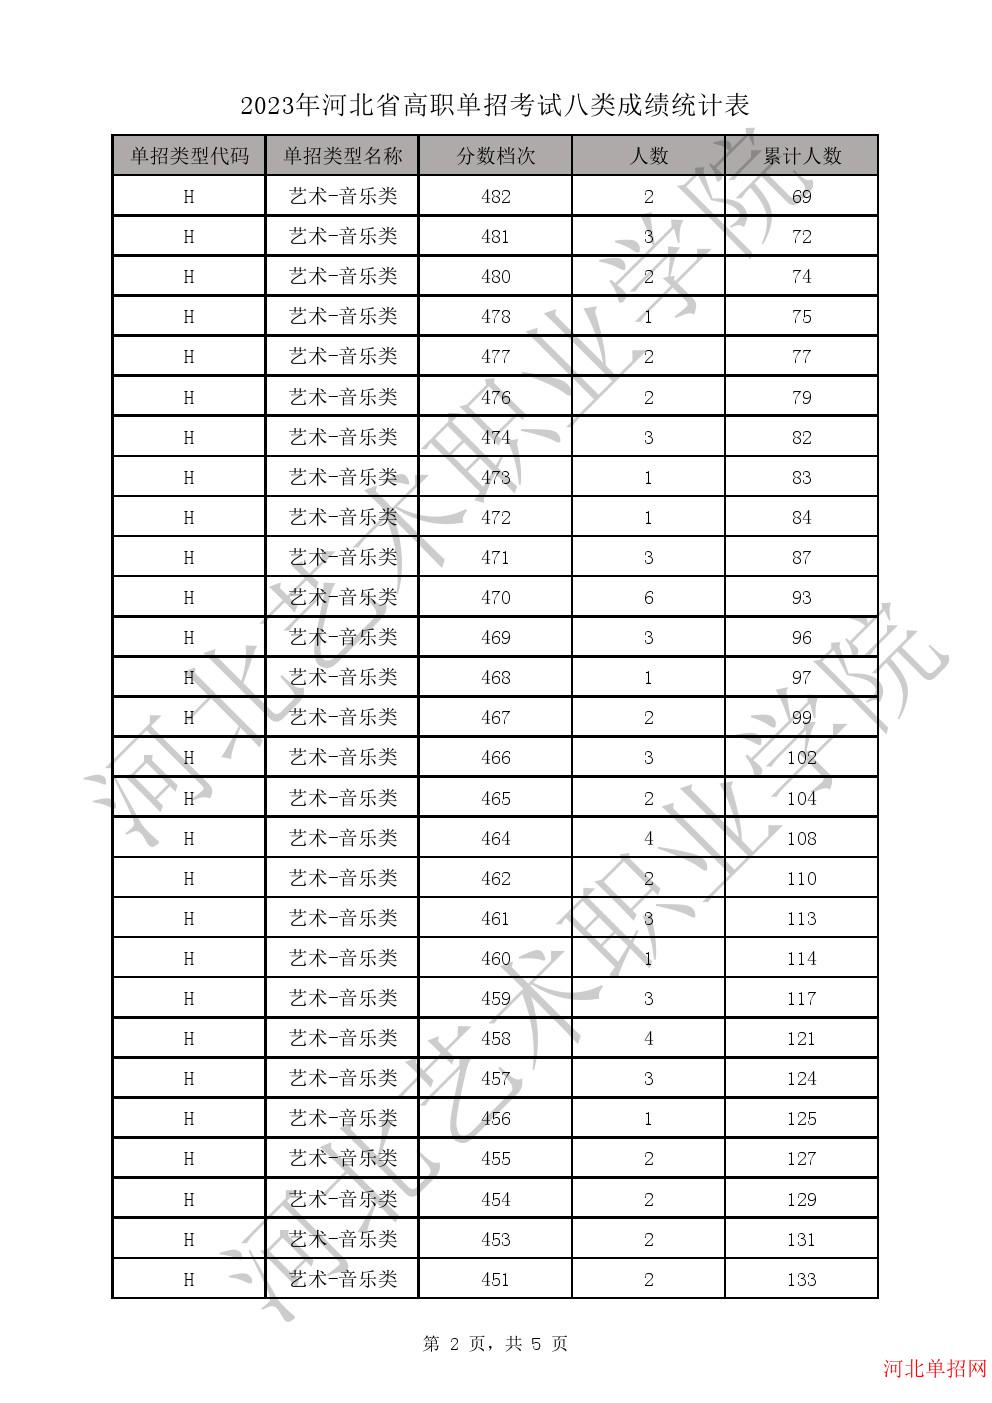 2023年河北省高职单招考试八类成绩统计表-H艺术-音乐类一分一档表 图2